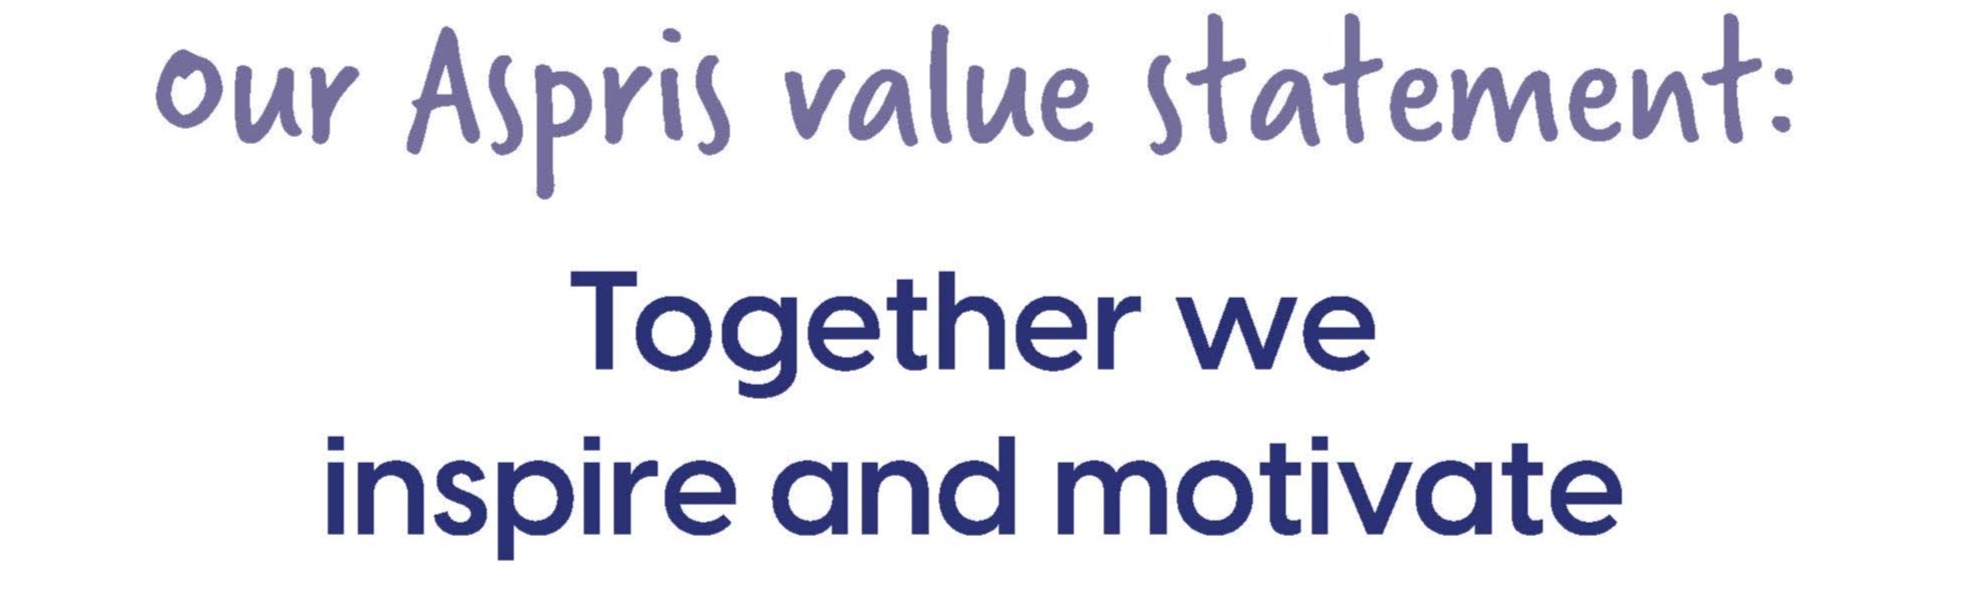 Our Aspiris value statement